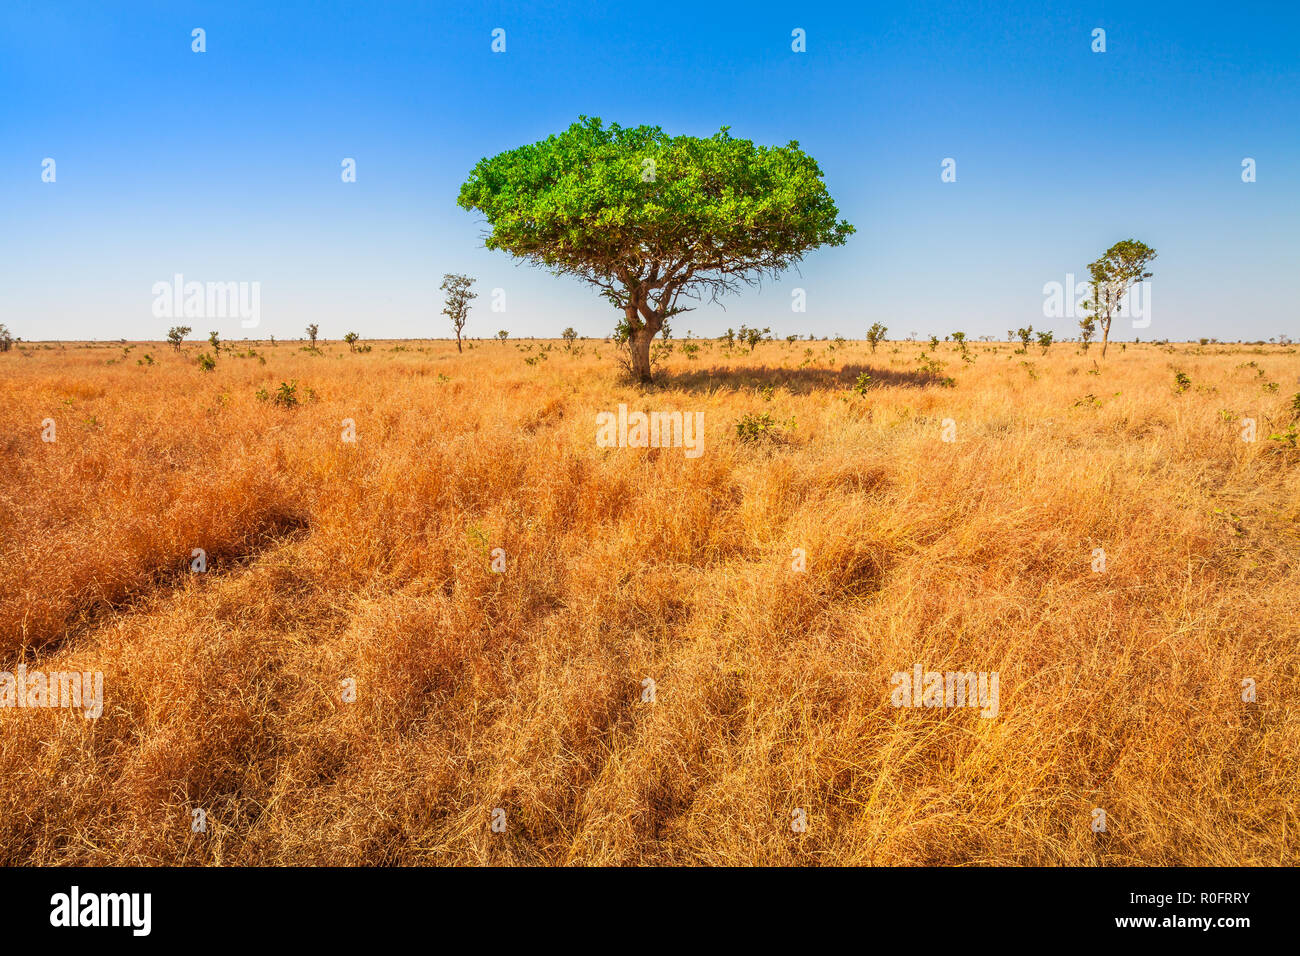 Afrikanische Akazie in der Serengeti Nationalpark in Tansania, Ostafrika, trockenen Jahreszeit. Afrika Safari Szene in der Savanne Landschaft. Baum allein in den afrikanischen Szene. Kopieren Sie Platz. Hintergrund. Blue Sky. Stockfoto